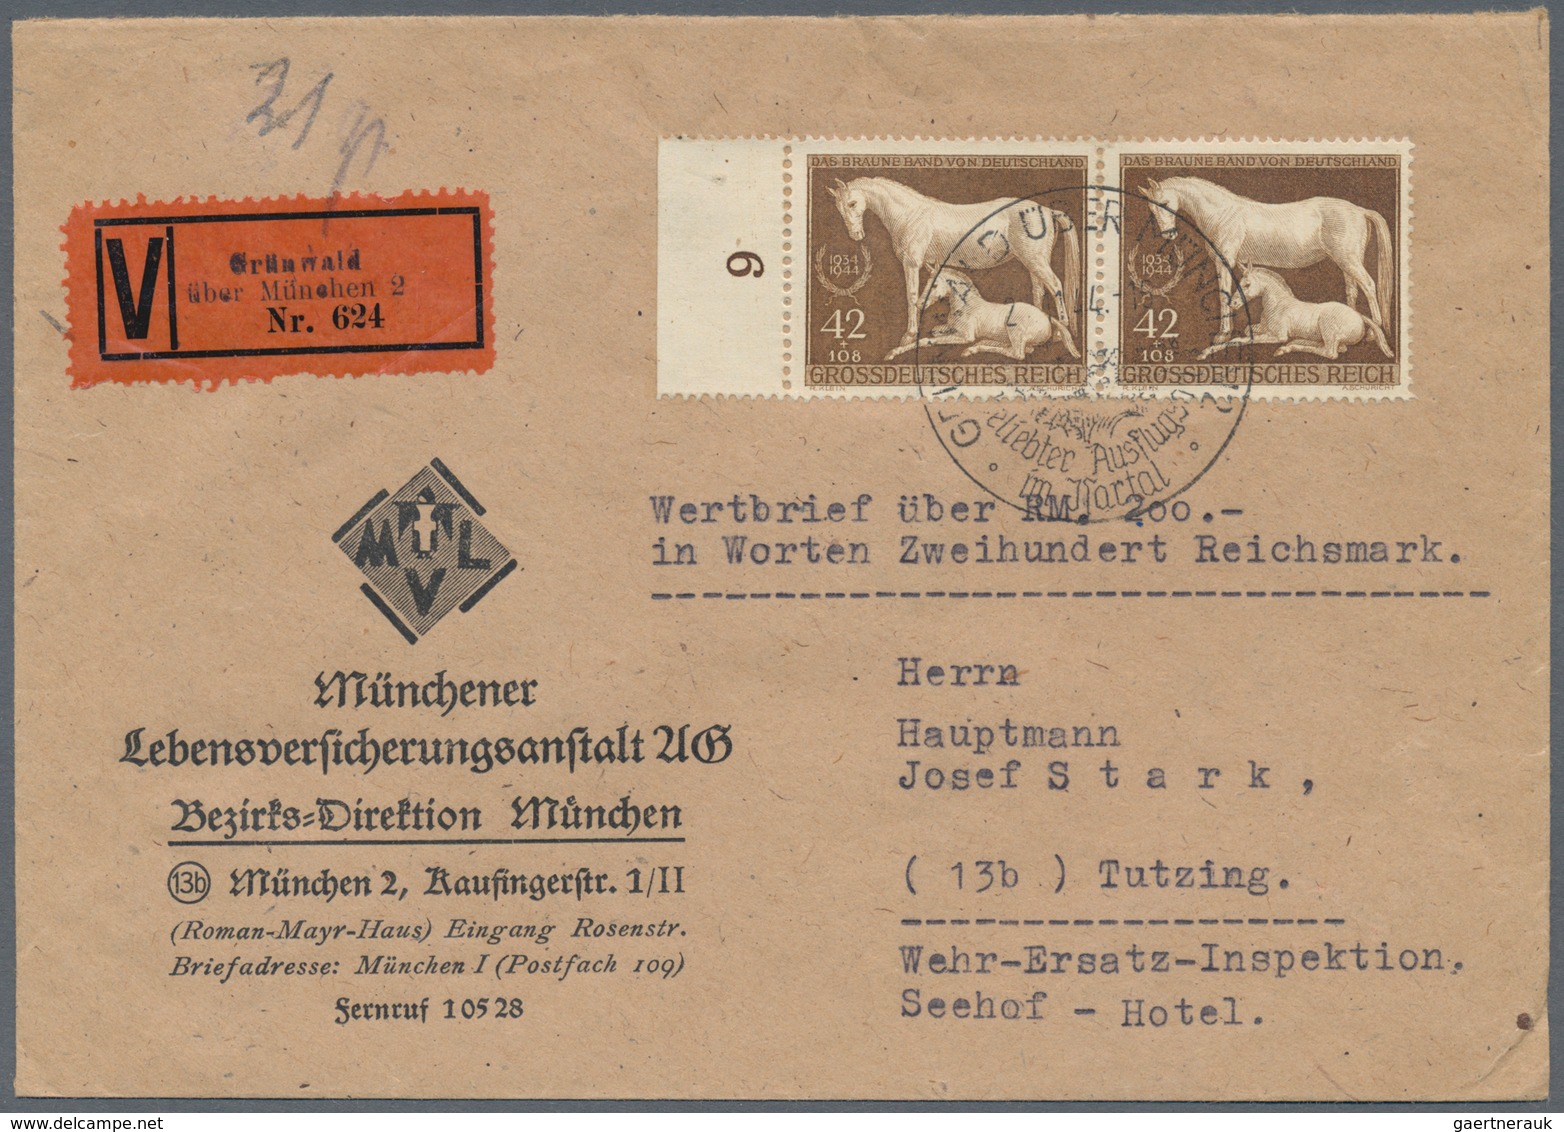 Deutsches Reich - 3. Reich: 1933/1945, umfassende Sammlung von ca. 1.250 Briefen und Karten, augensc